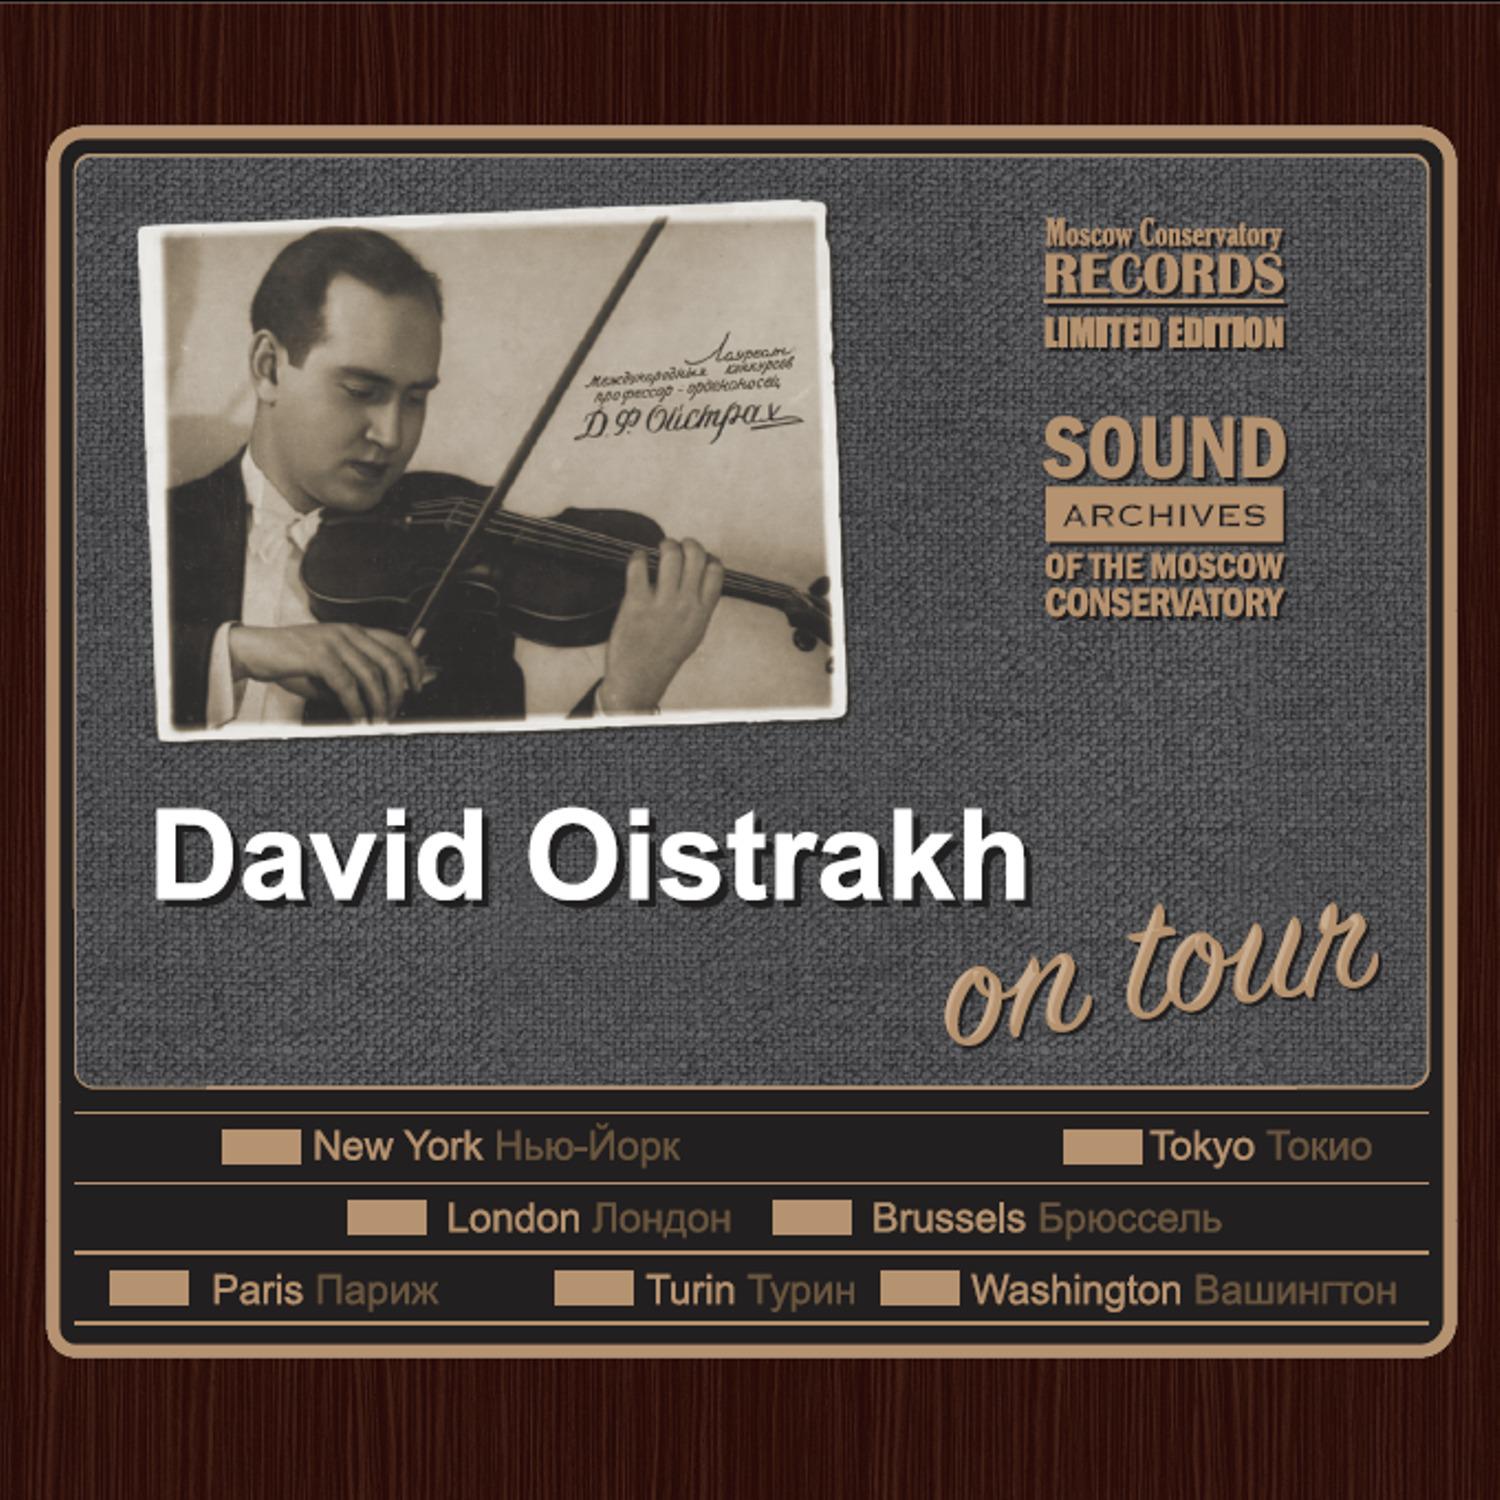 David Oistrakh - Concerto for Violin and Orchestra in D major, Op. 77: 1. Allegro non troppo